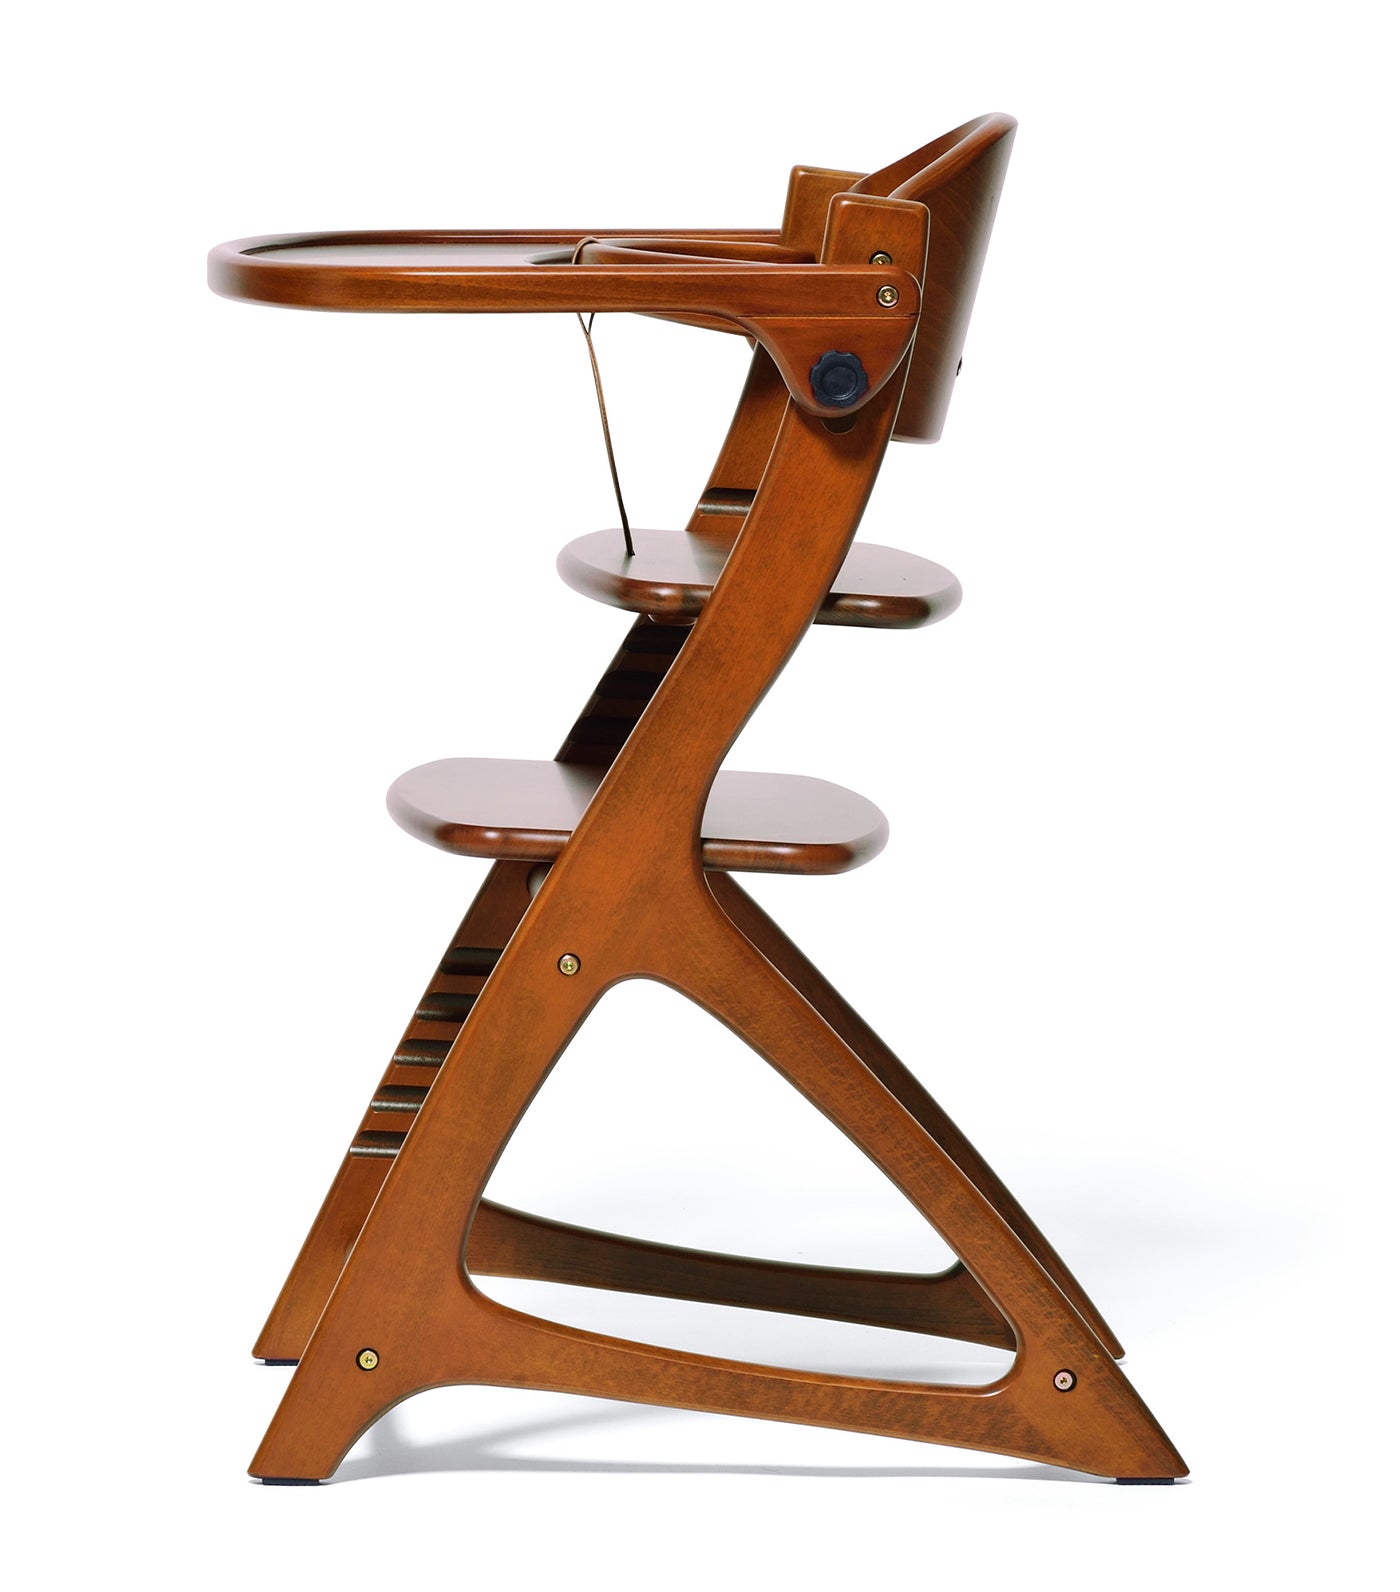 Materna Wooden High Chair - Light Brown